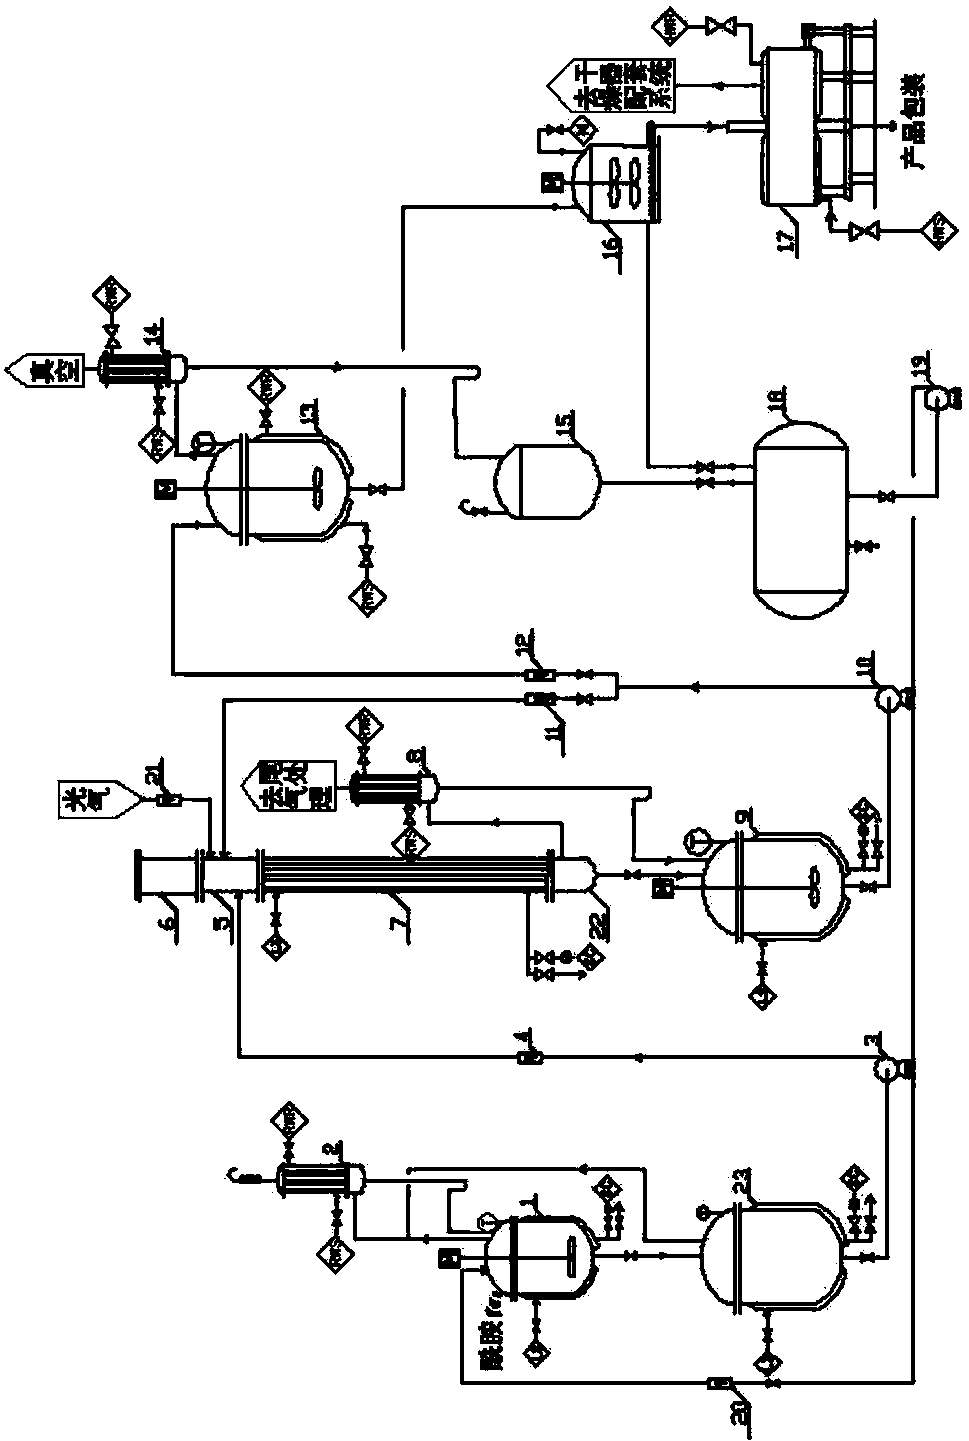 2-cyanophenol preparing method